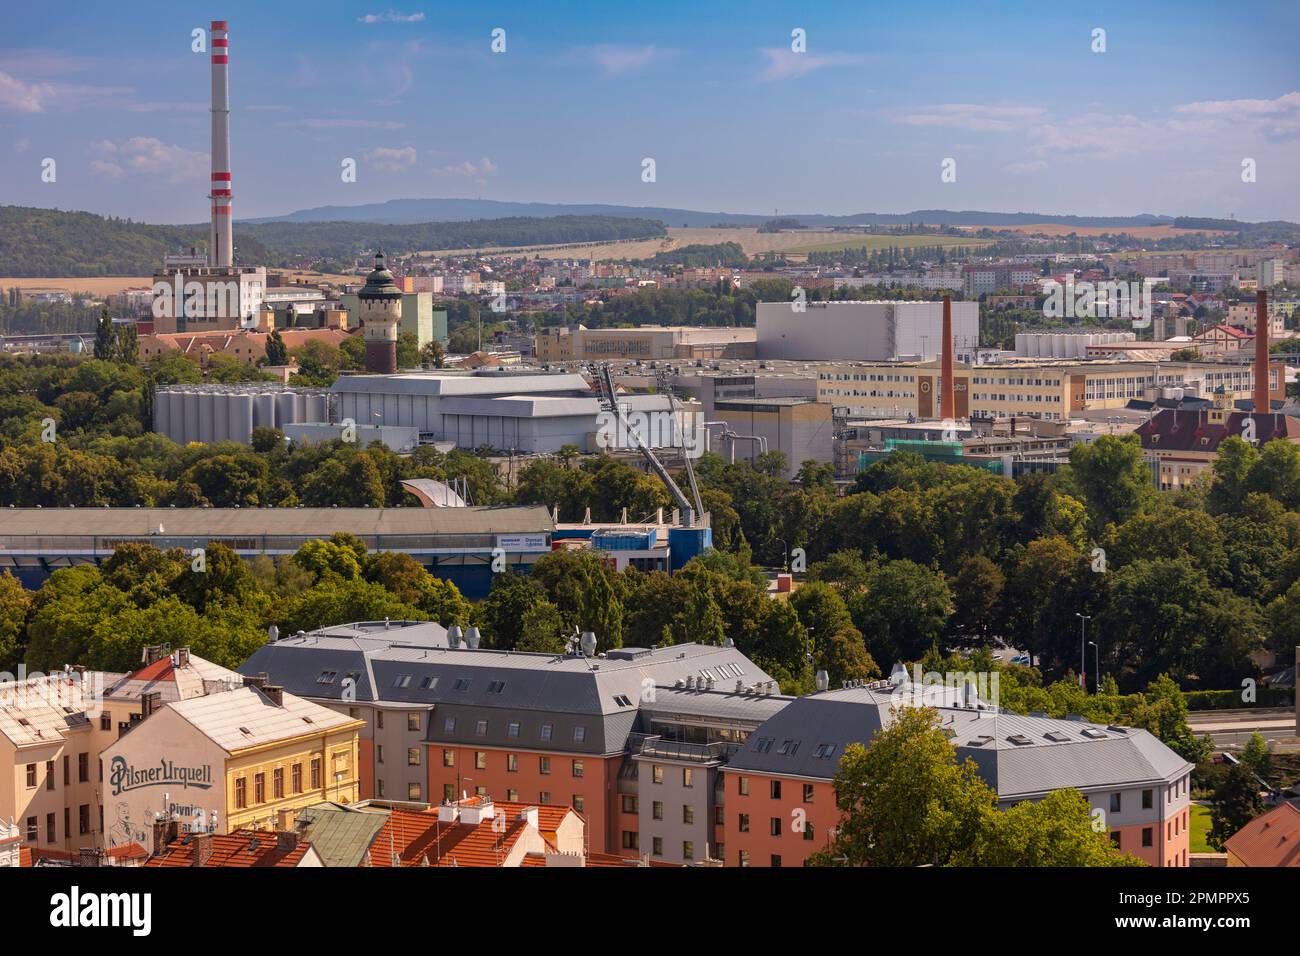 PILSEN, TSCHECHISCHE REPUBLIK, EUROPA - Luftaufnahme der Doosan Arena, Mitte links, und Pilsner Urquell Brauerei. Stockfoto